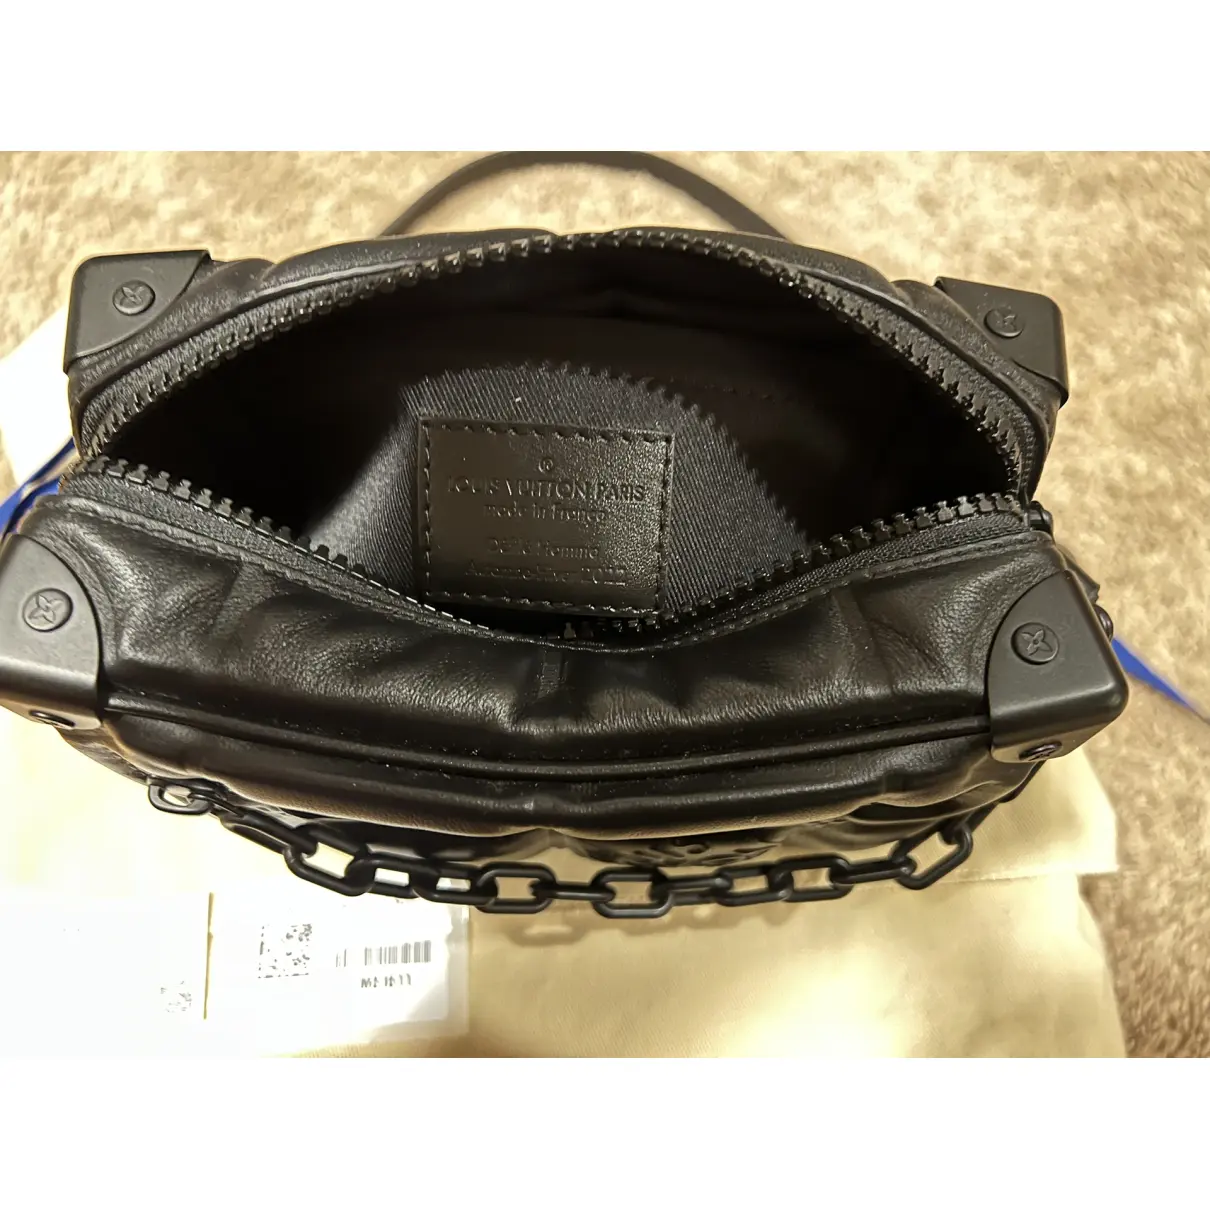 Soft trunk mini leather bag Louis Vuitton